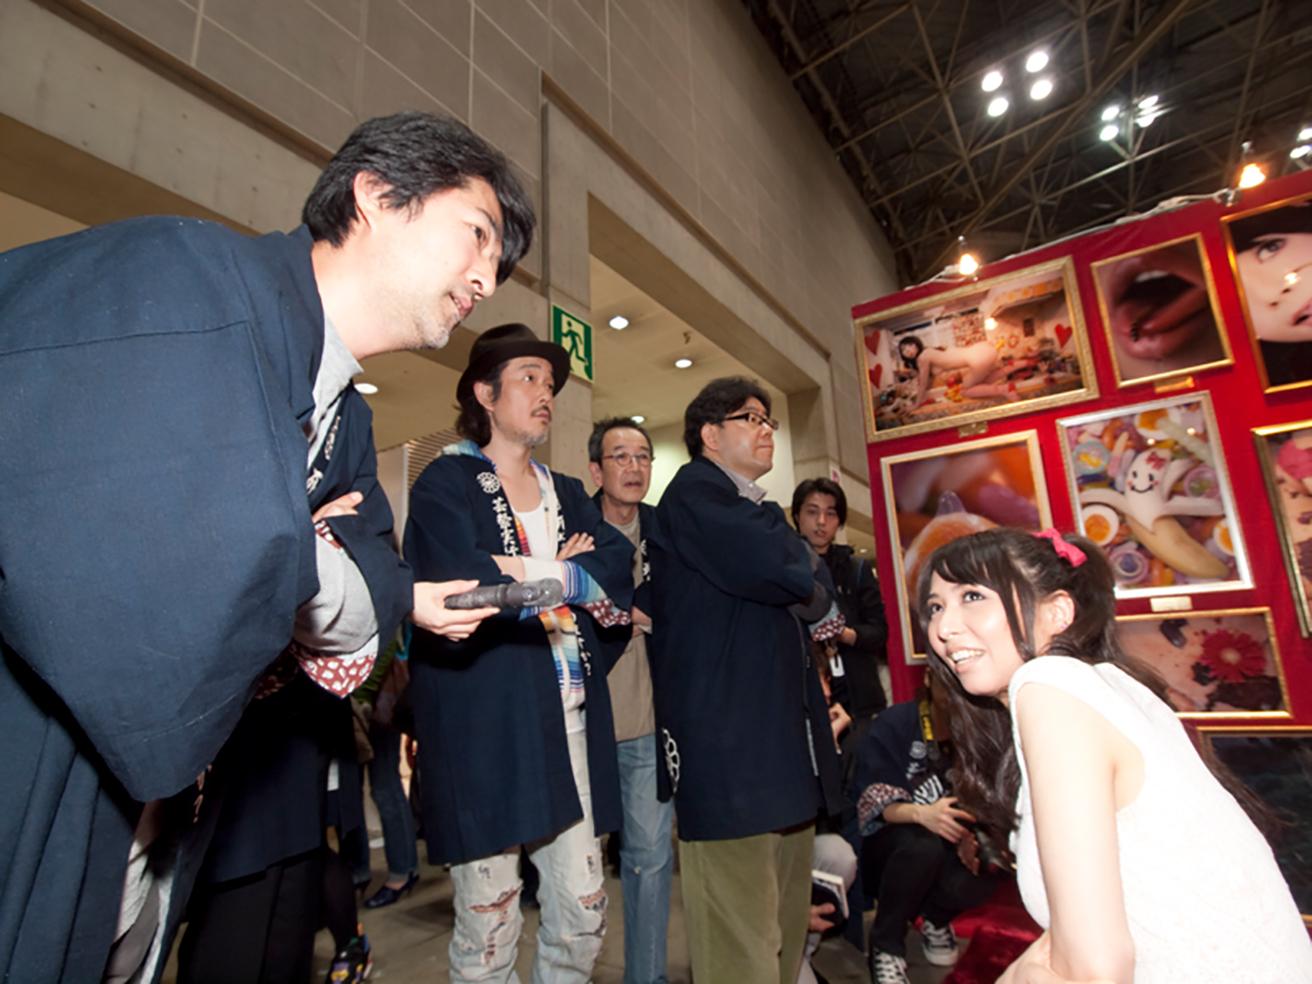 2009年春の『GEISAI#12』審査風景。審査員は会田誠、リリー・フランキー、秋元康、坂田和實、山本寛の5名。